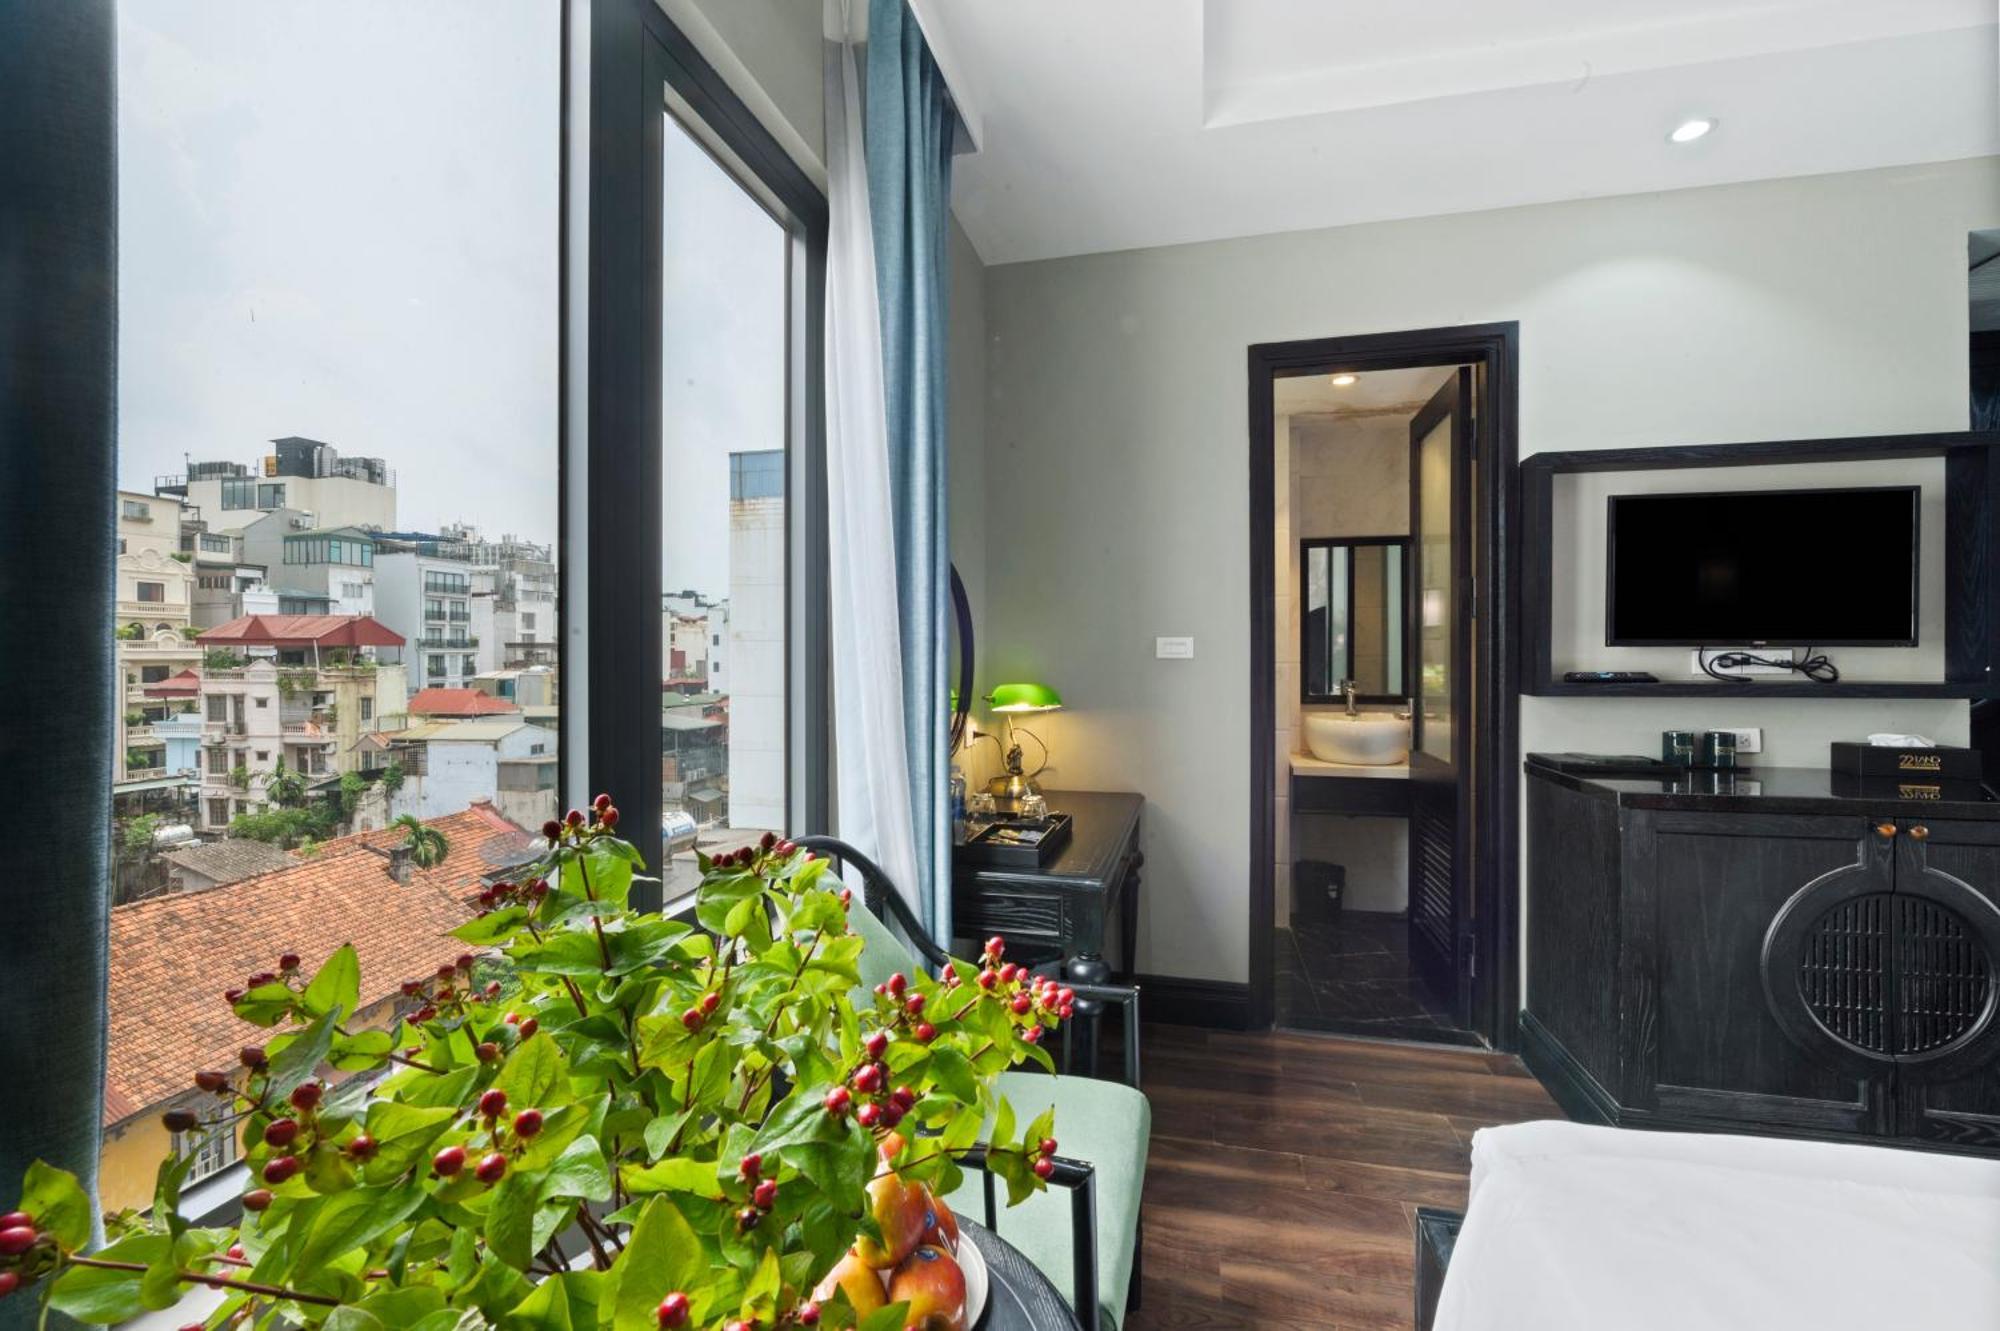 22Land Residence Hotel & Spa 52 Ngo Huyen Hanoi Eksteriør billede